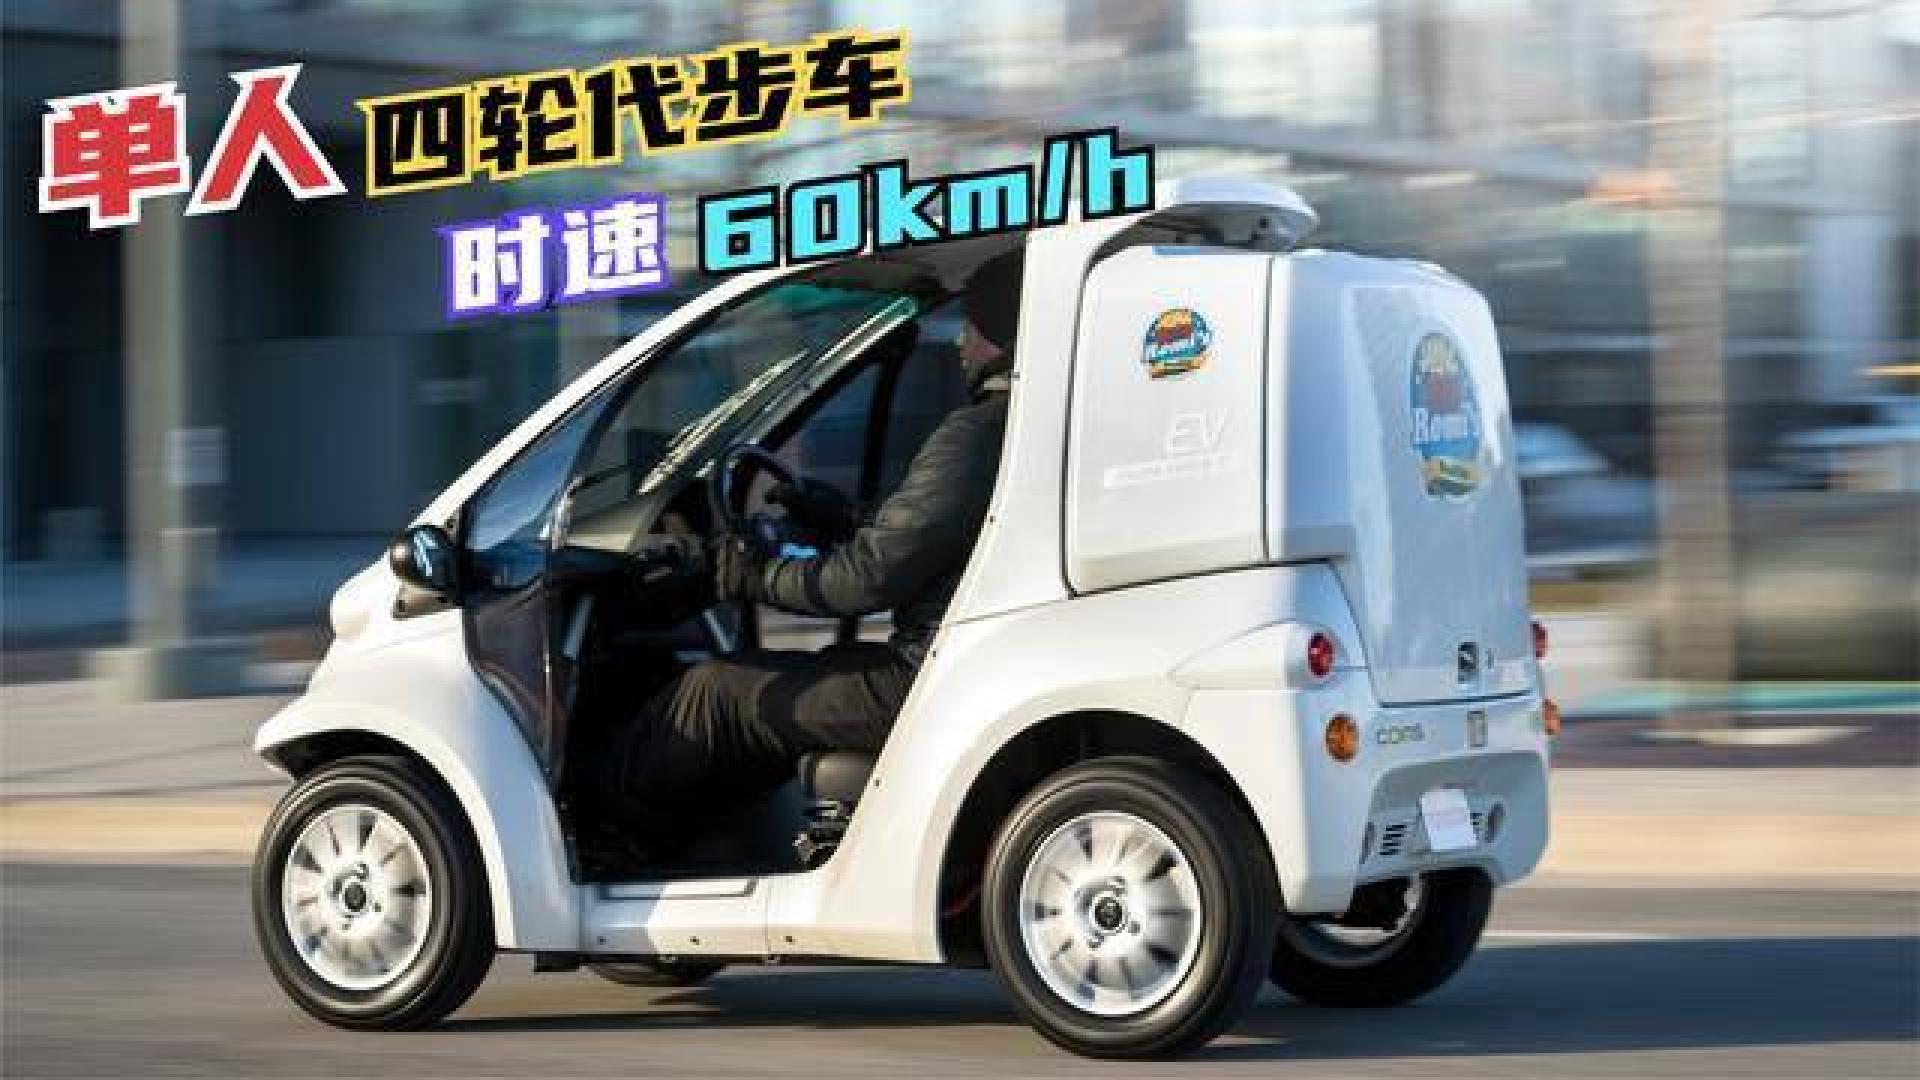 超微型单人城市代步四轮车,纯电动时速60公里,车尾还有大货箱!